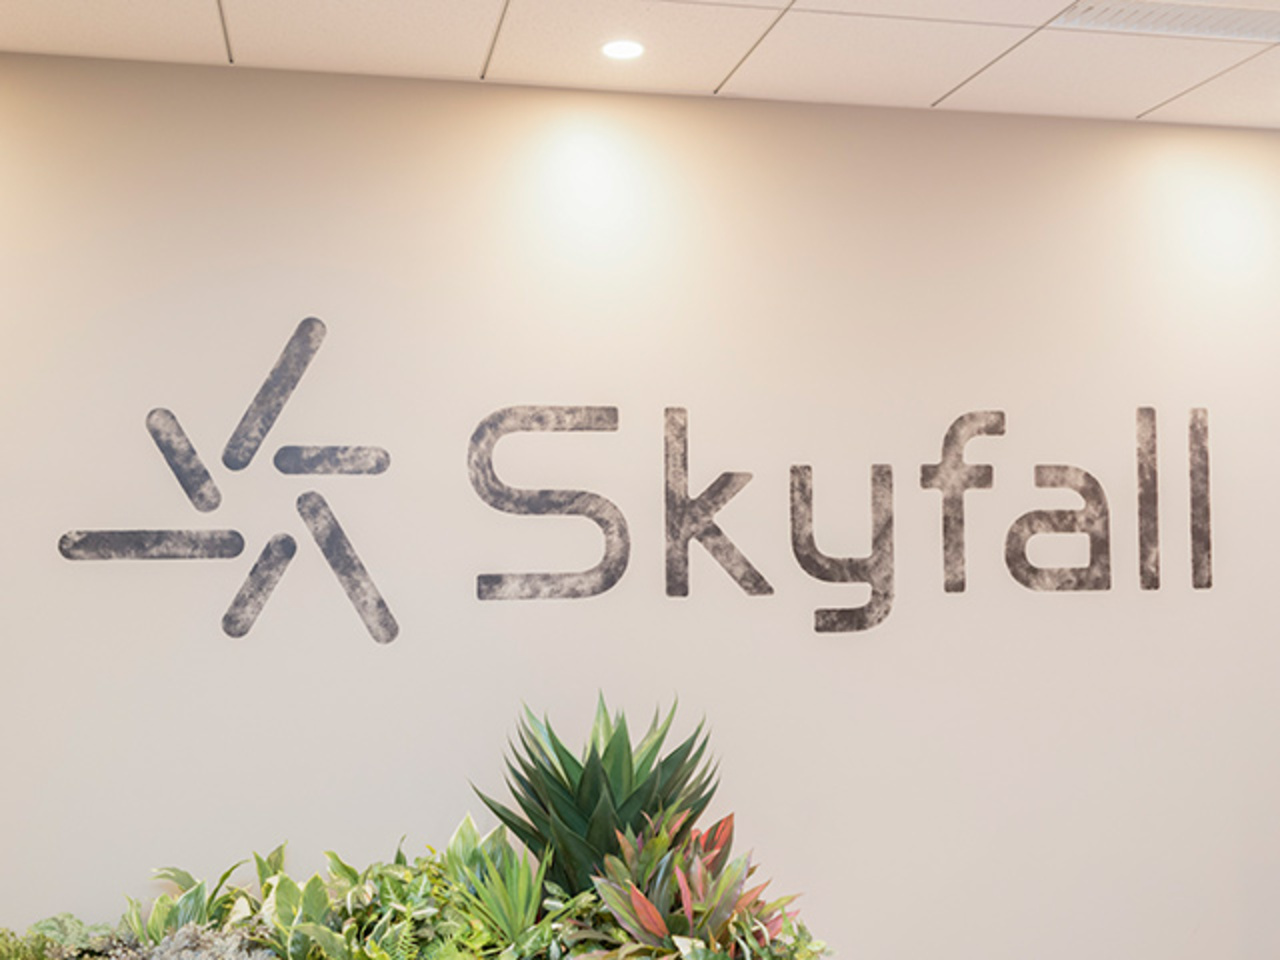 株式会社Skyfall 求人画像1